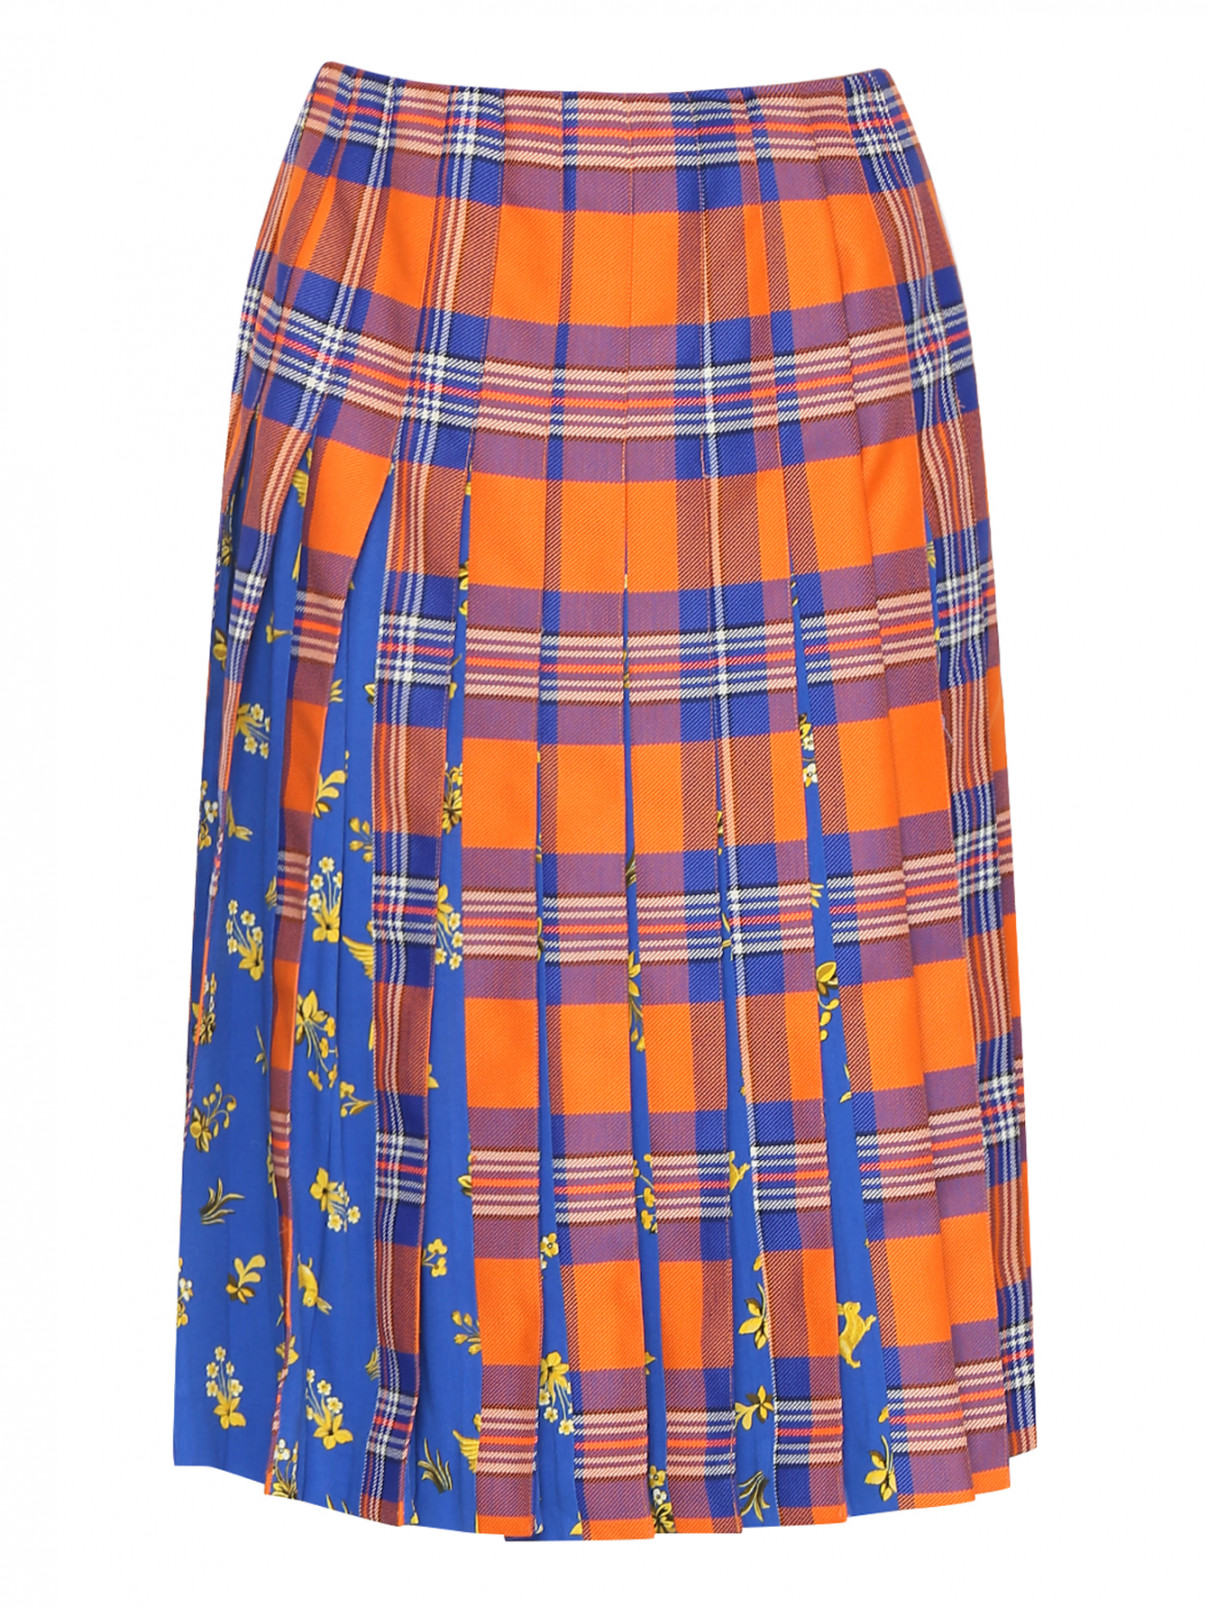 Плиссированная юбка из шерсти с узором "клетка" Vivetta  –  Общий вид  – Цвет:  Оранжевый